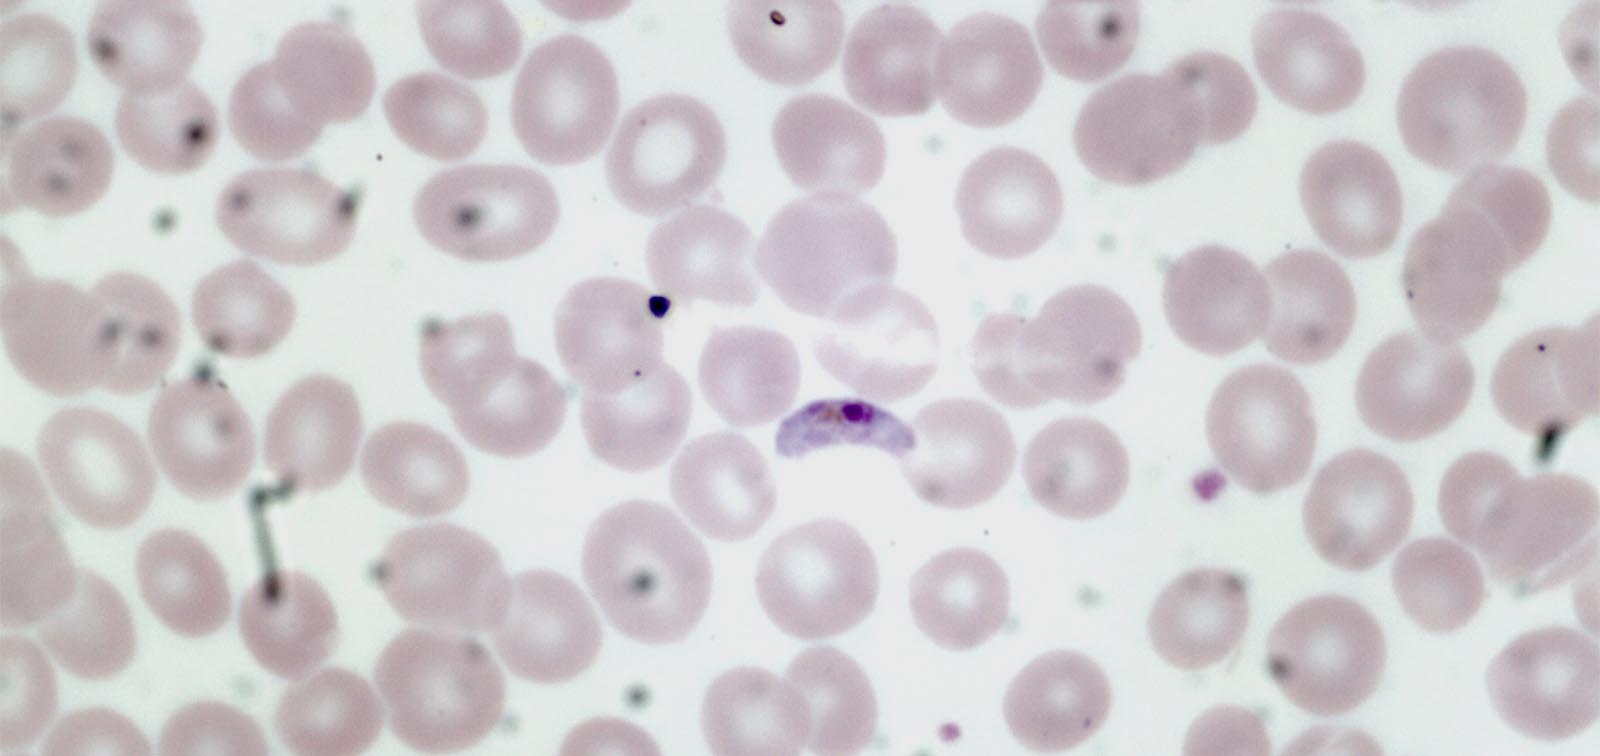 Plasmodium falciparum gametocyte